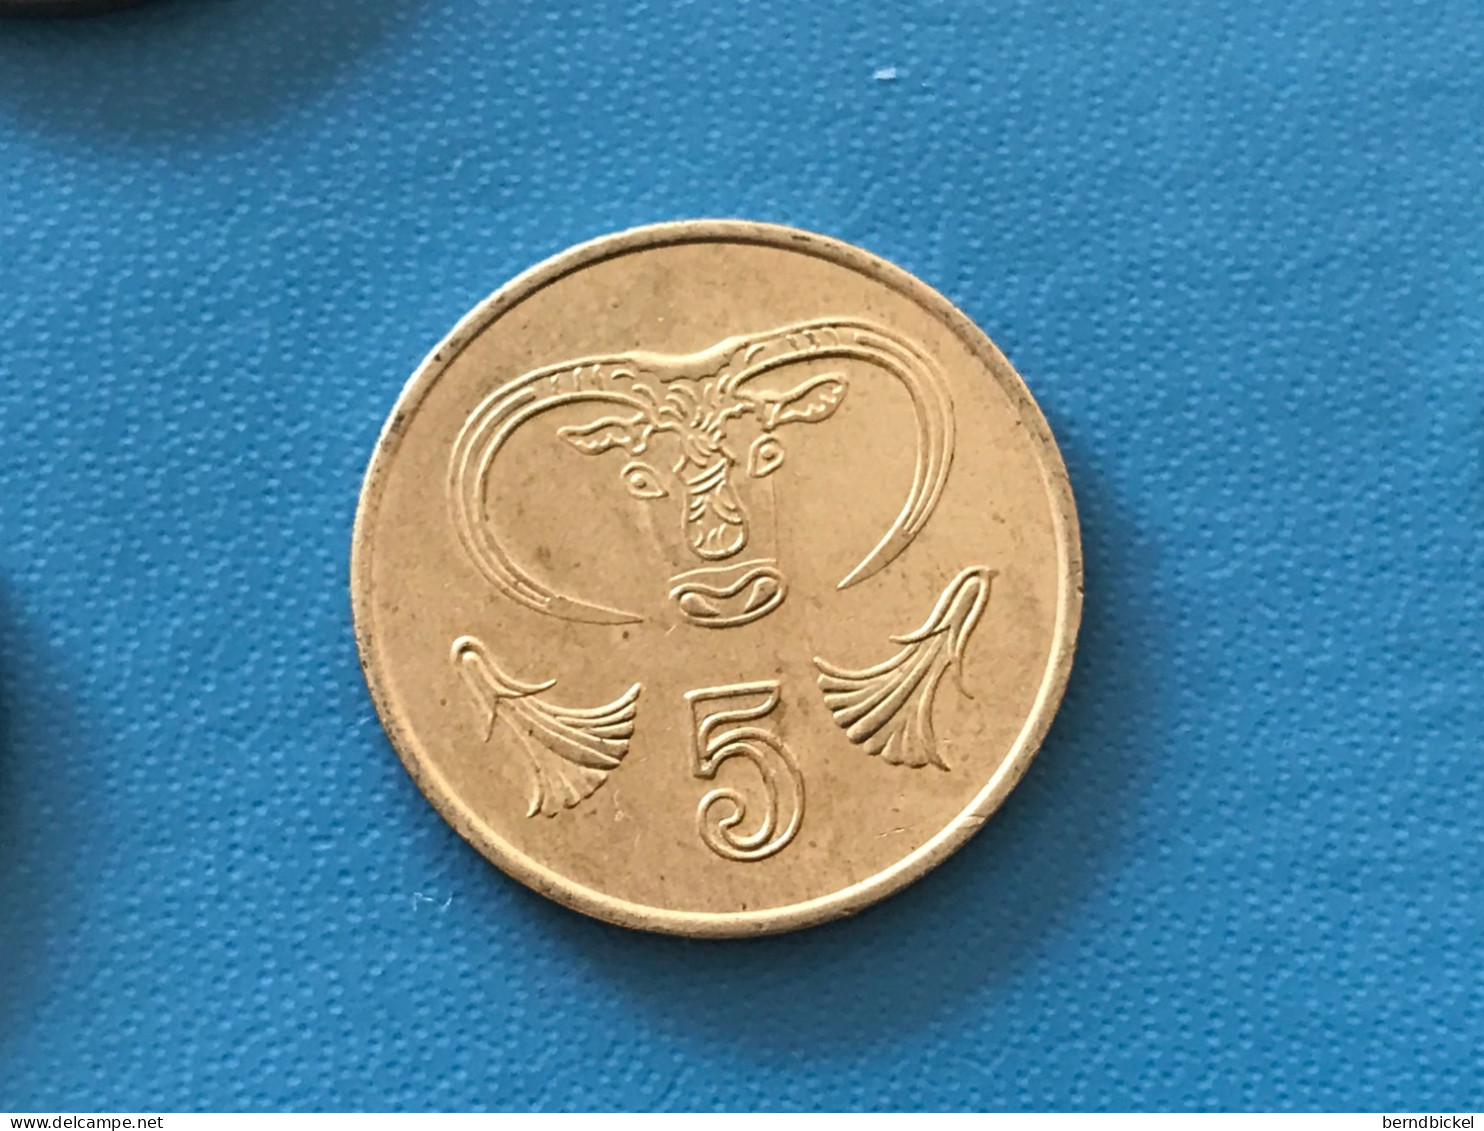 Münze Münzen Umlaufmünze Zypern 5 Cent 1993 - Zypern